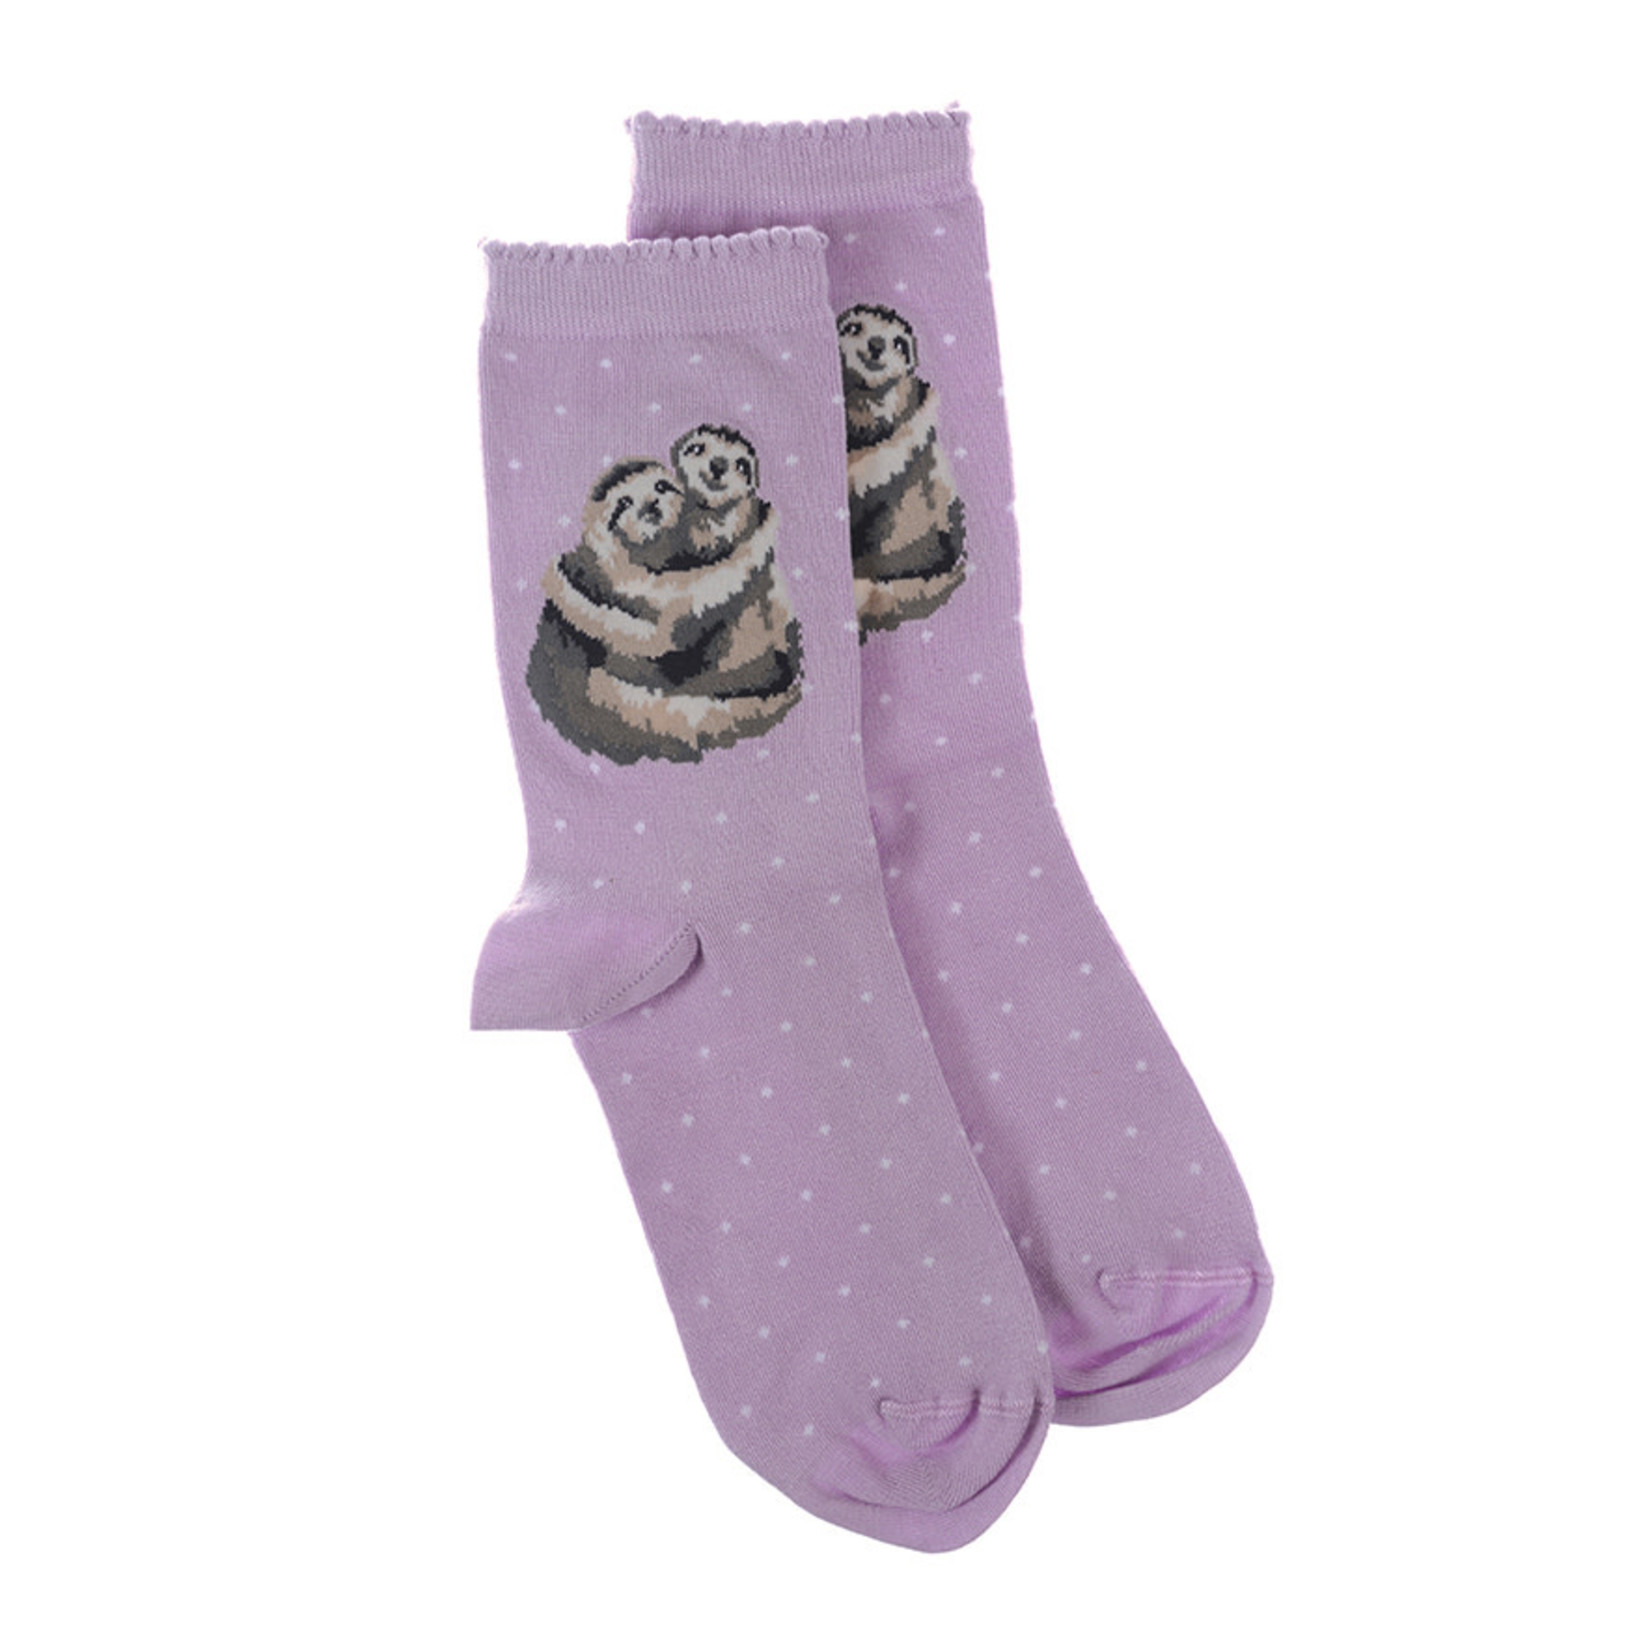 Wrendale Designs Socks - 'Big Hugs' Sloth (SOCK009)